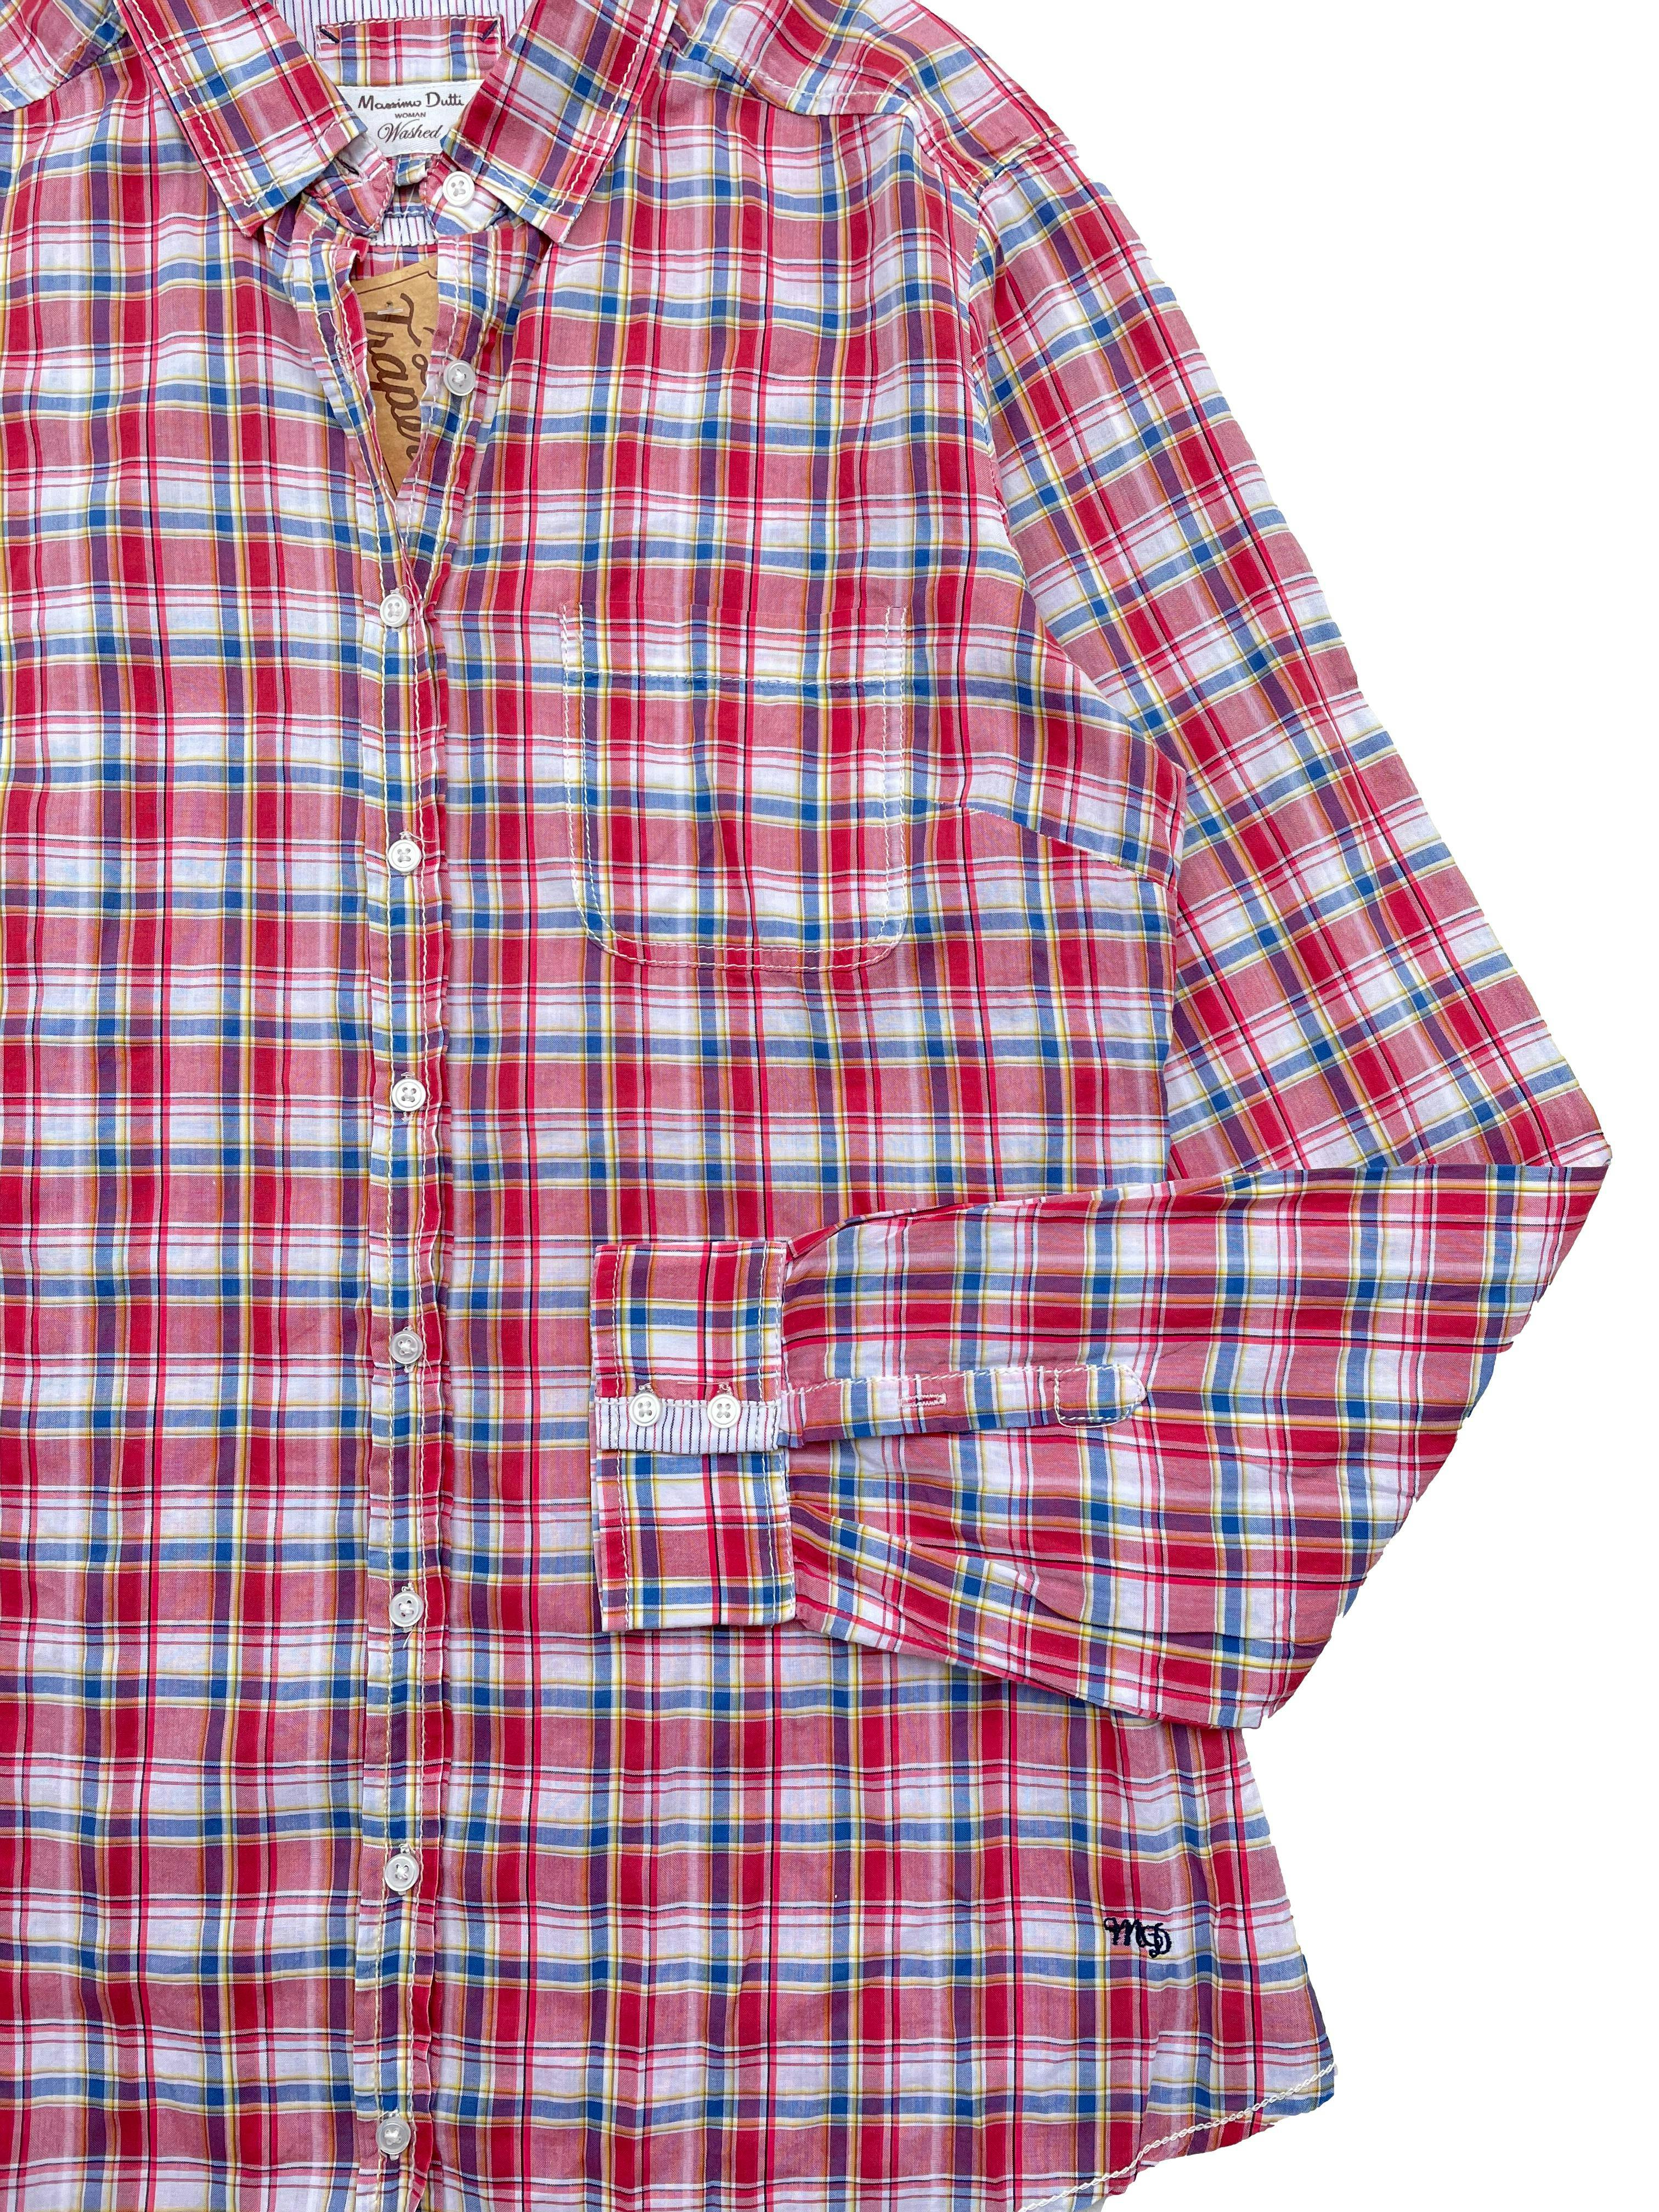 Blusa Massimo Dutti a cuadros rojos y azules, tela fresca 100% algodón con bolsillo frontal y botón de repuesto. Precio original S/240. Busto 96cm, Largo 58cm.